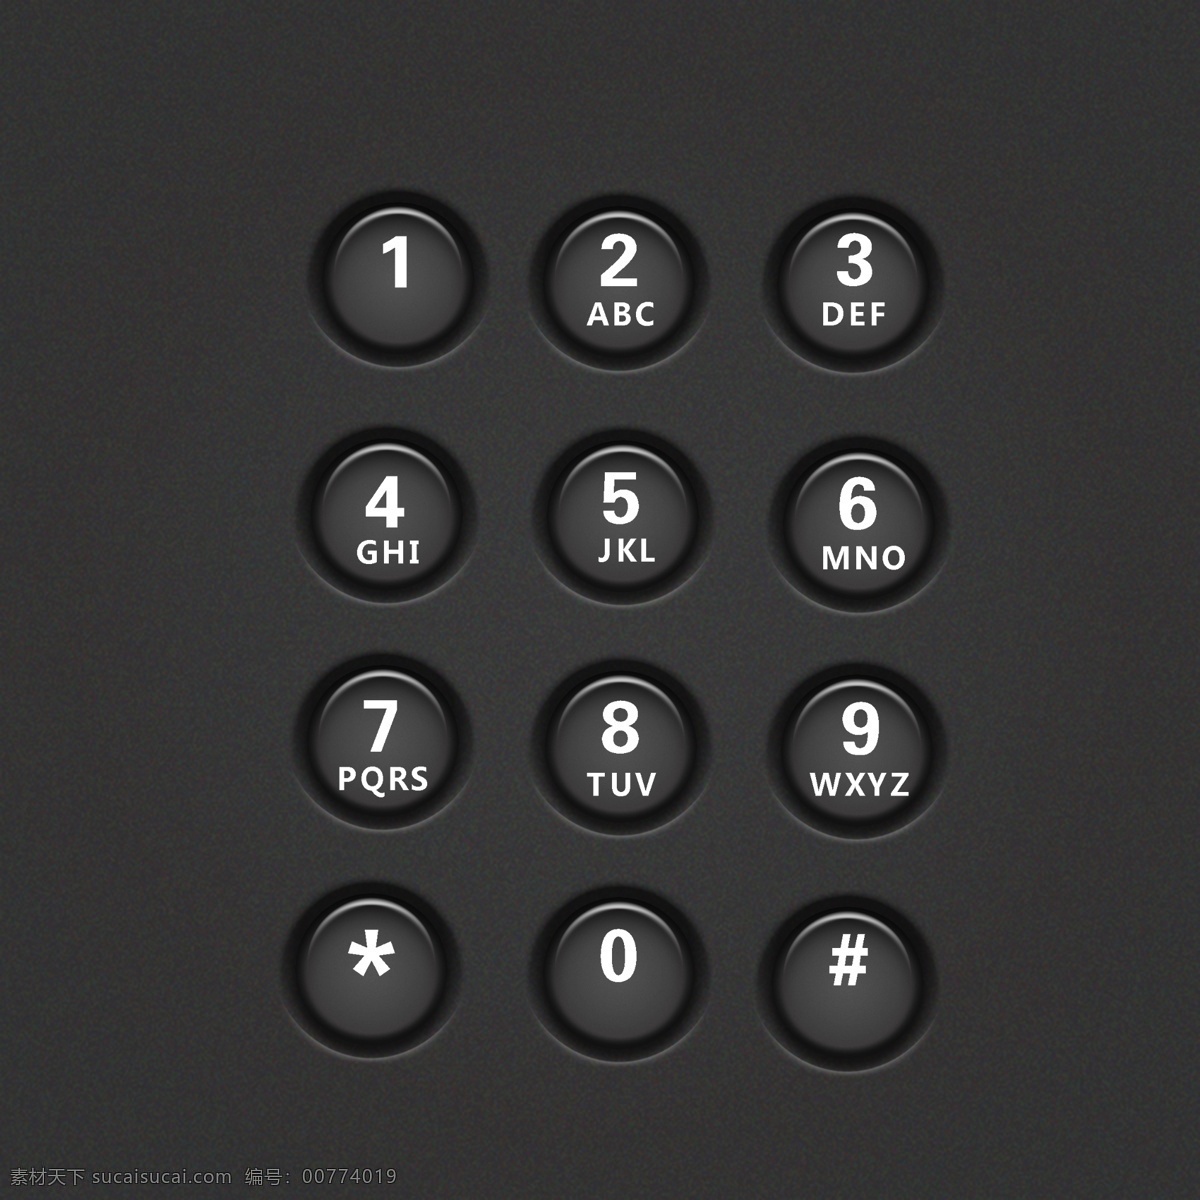 灰色 简约 风格 电话 按钮 小 图标 创意设计 电话按钮 按键 黑色